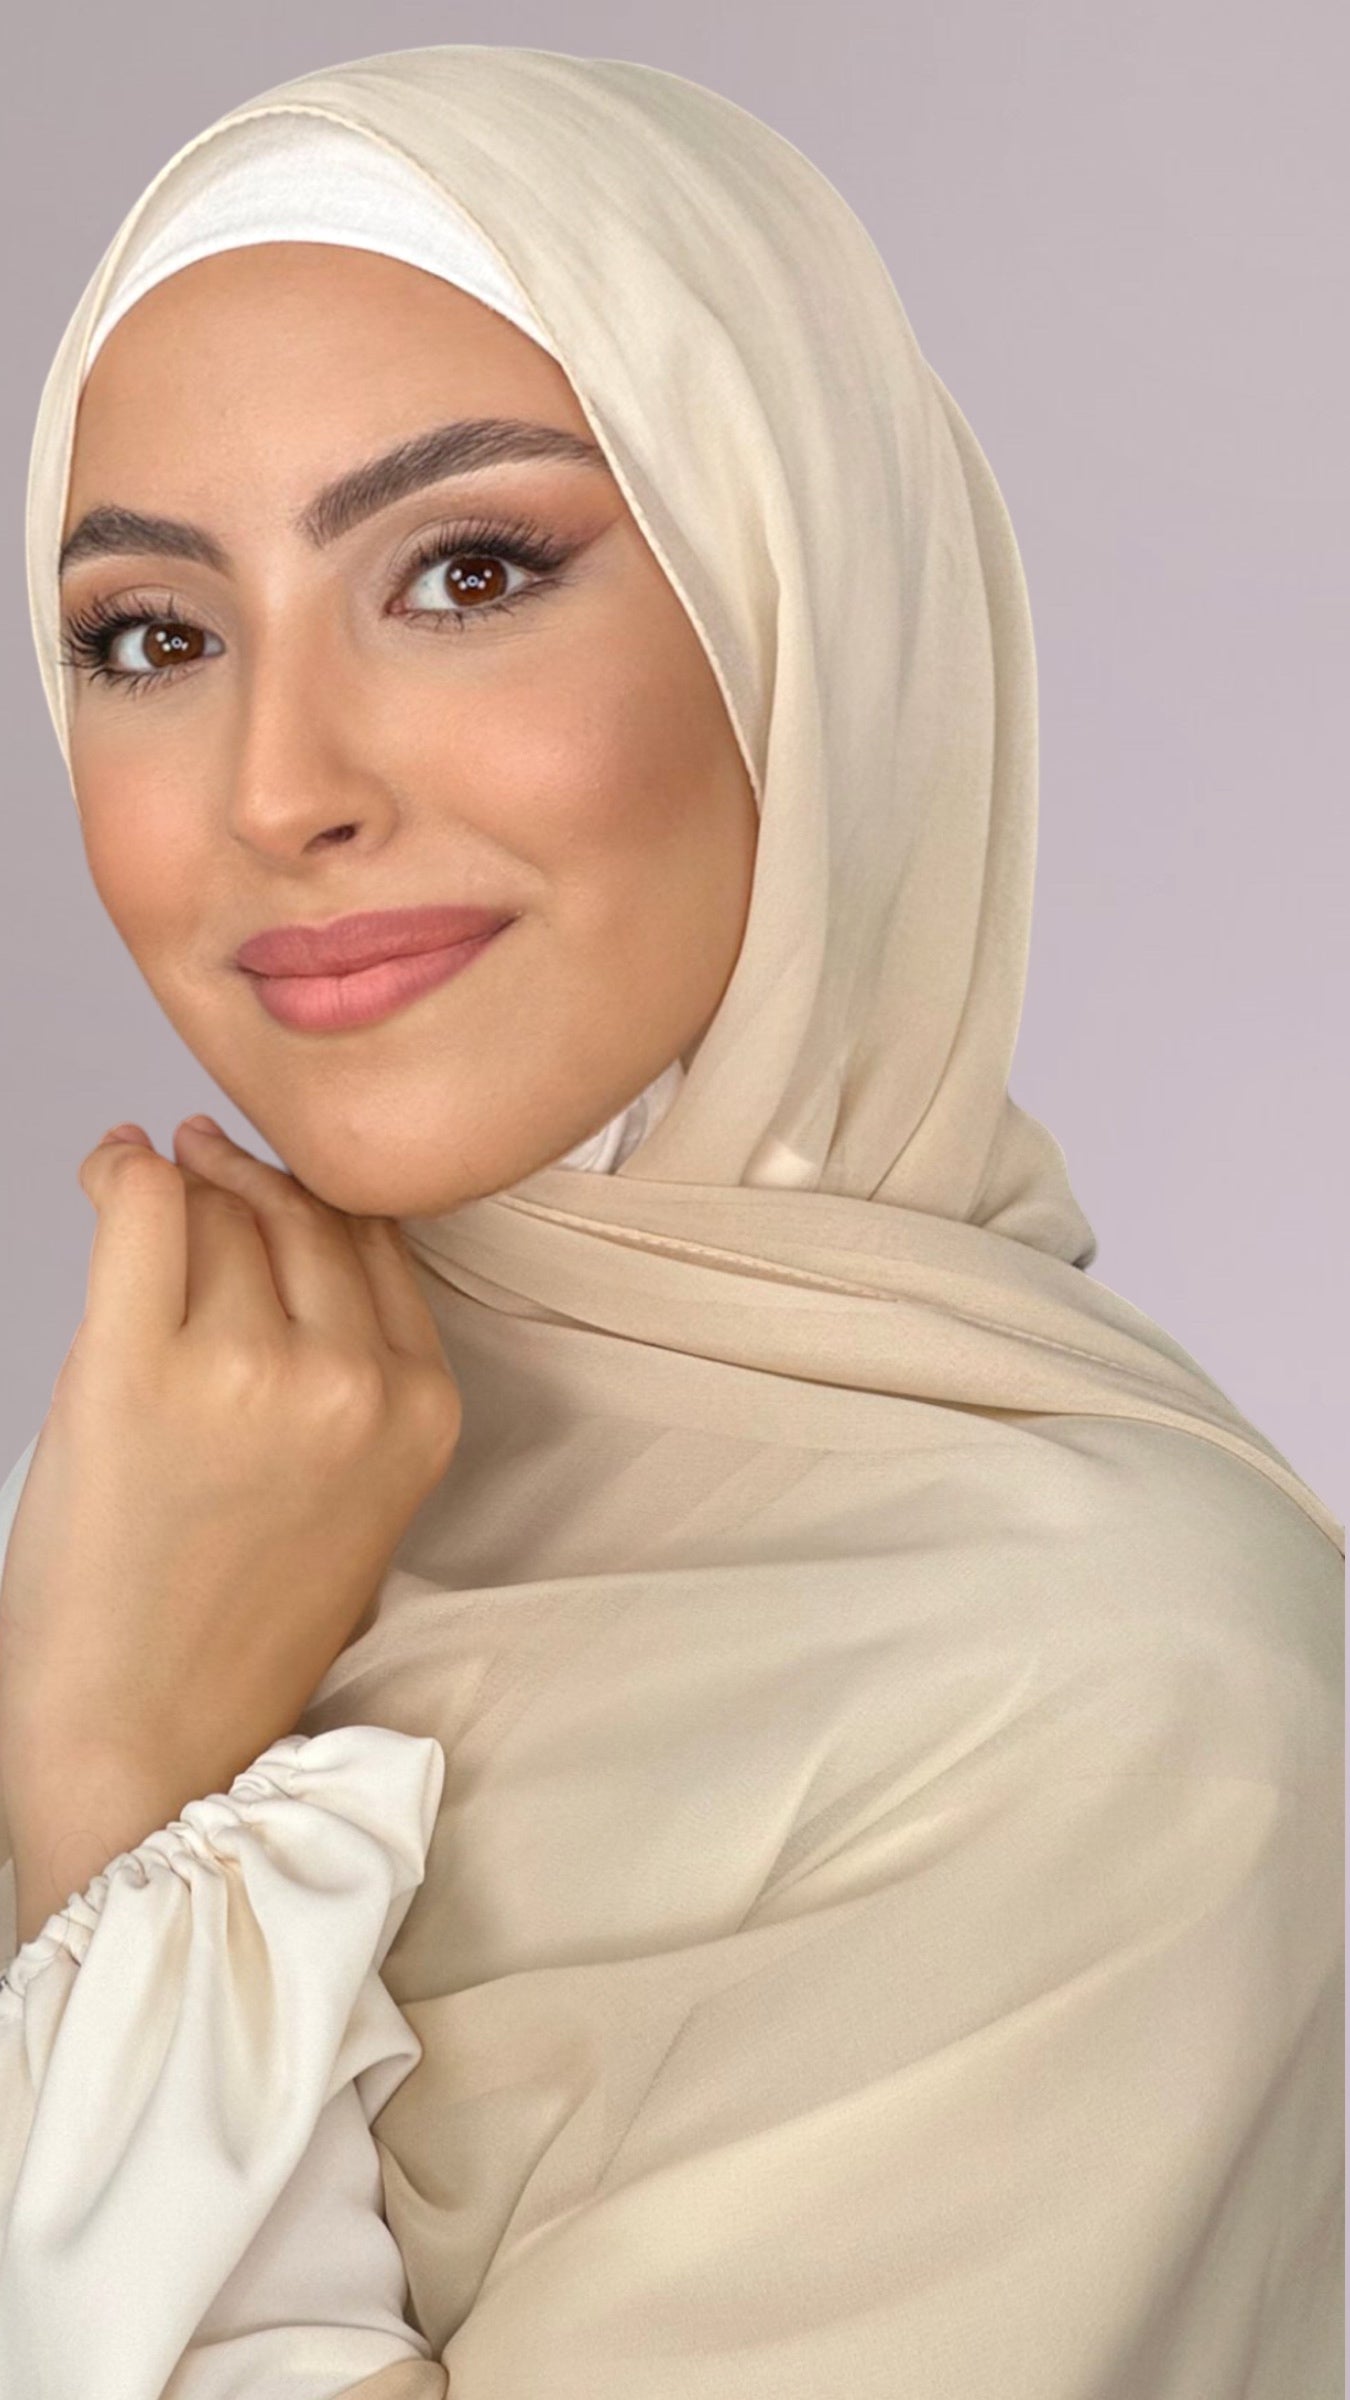 Hijab, chador, velo, turbante, foulard, copricapo, musulmano, islamico, sciarpa,  trasparente, chiffon crepe Beige Dorato